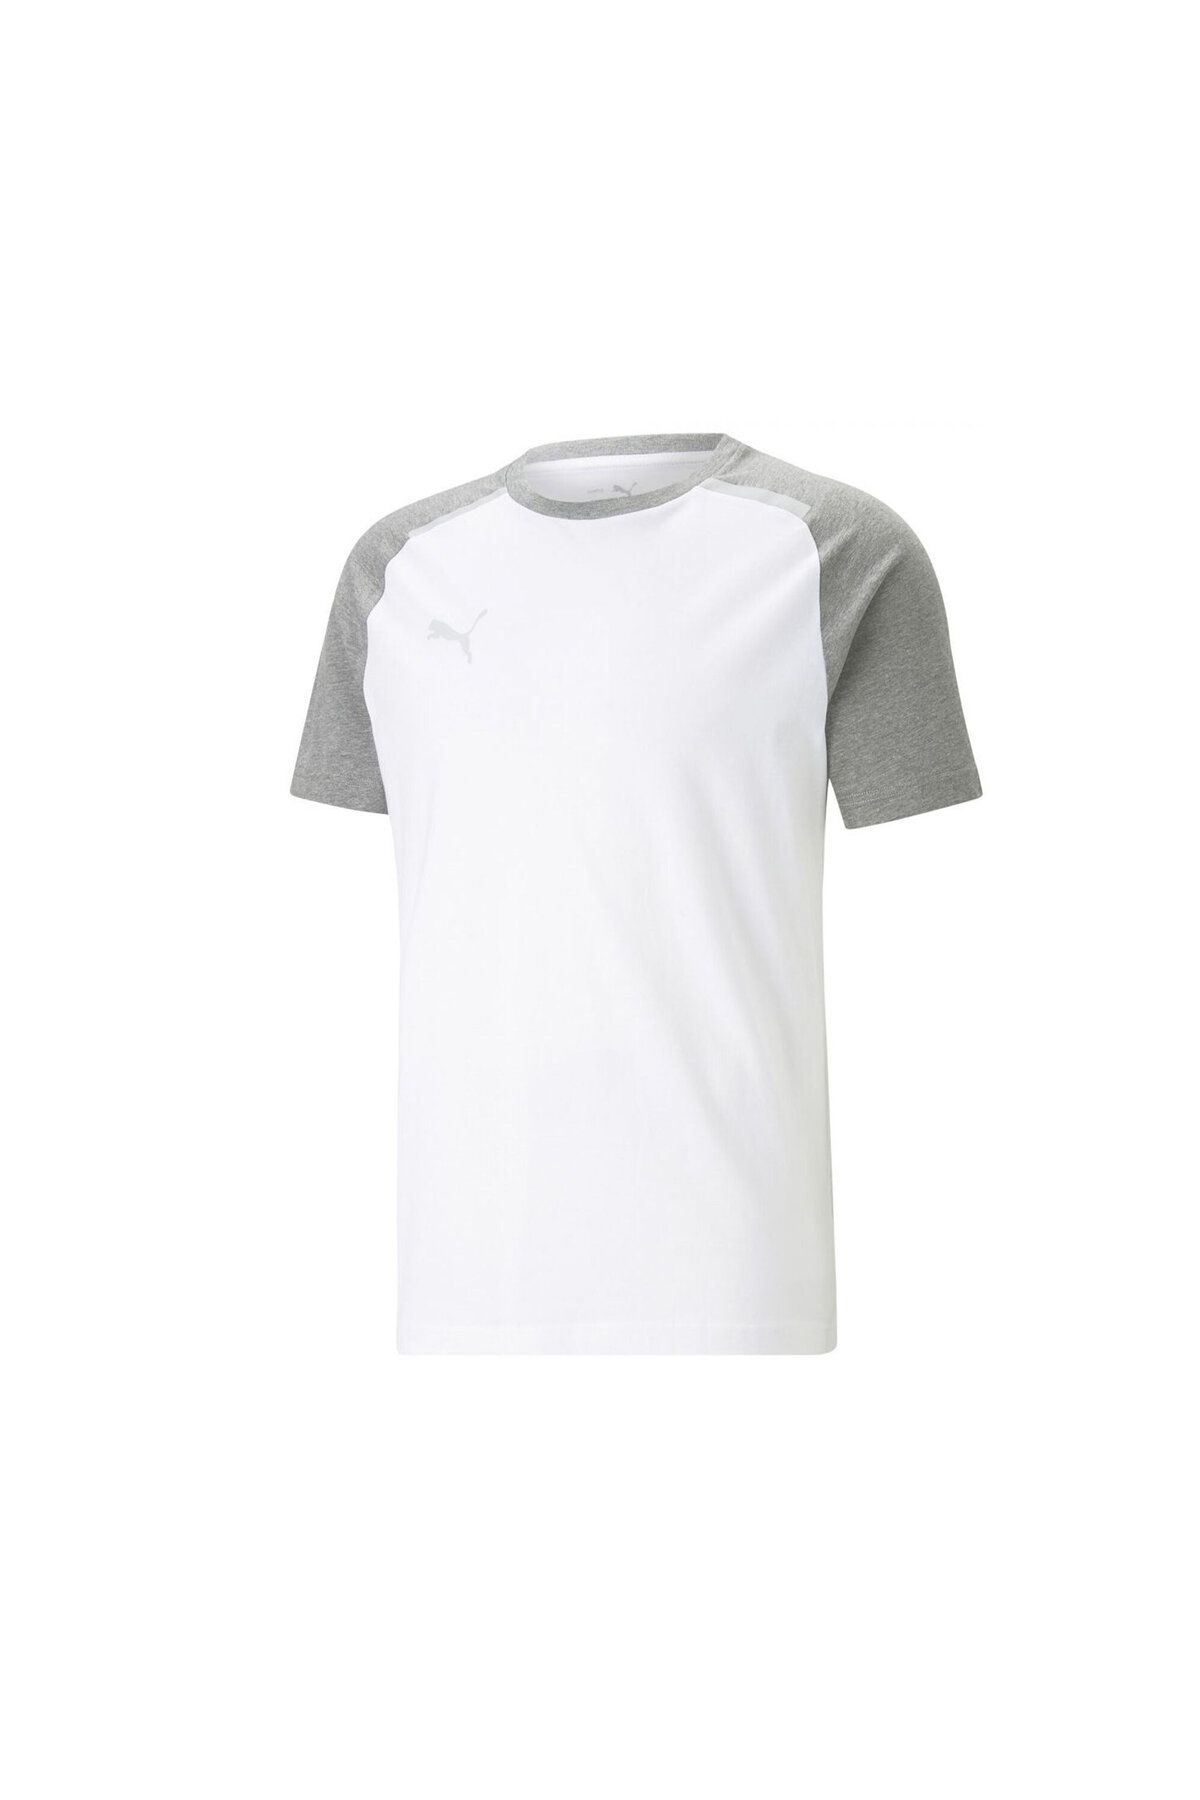 Puma Erkek Günlük Basic Pamuklu Yuvarlak Yaka Standart Kesim T-shirt